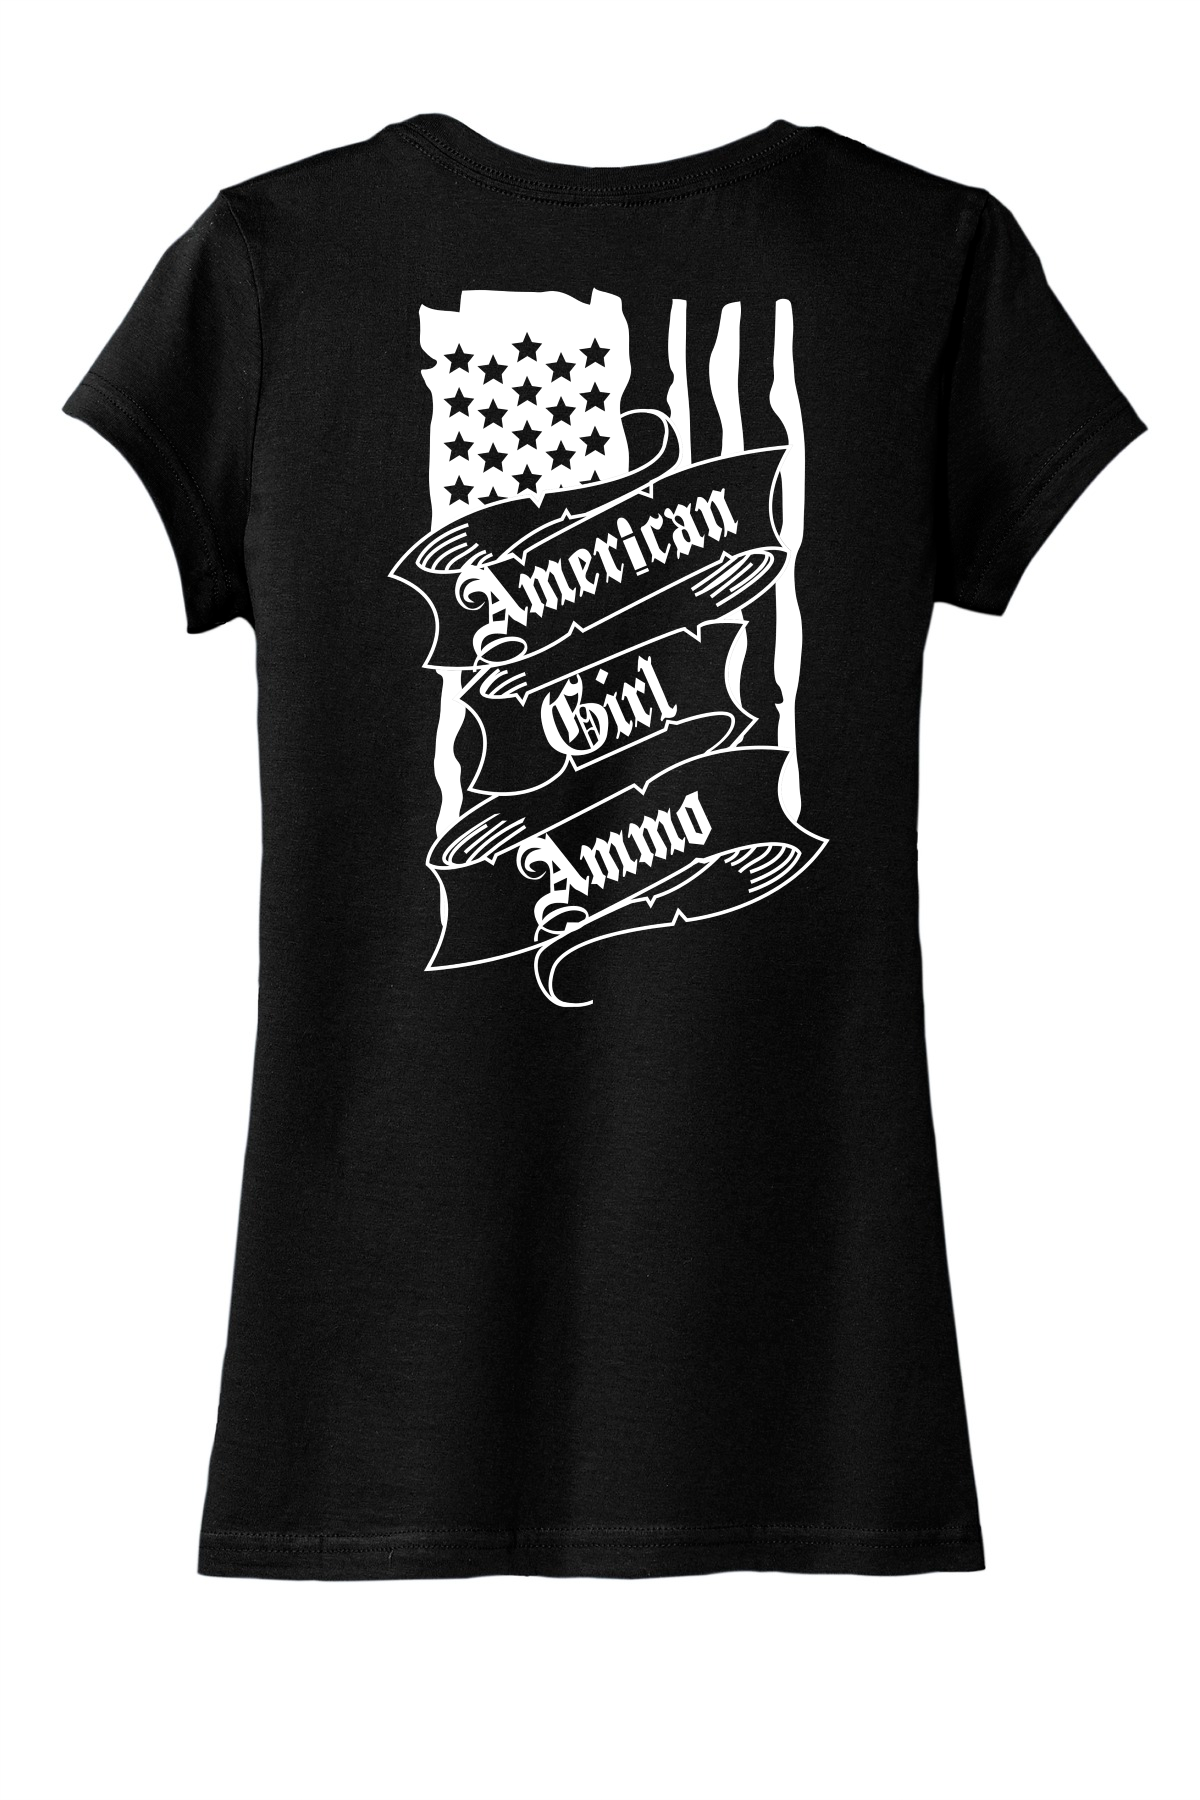 Pistol- Women's T-Shirt